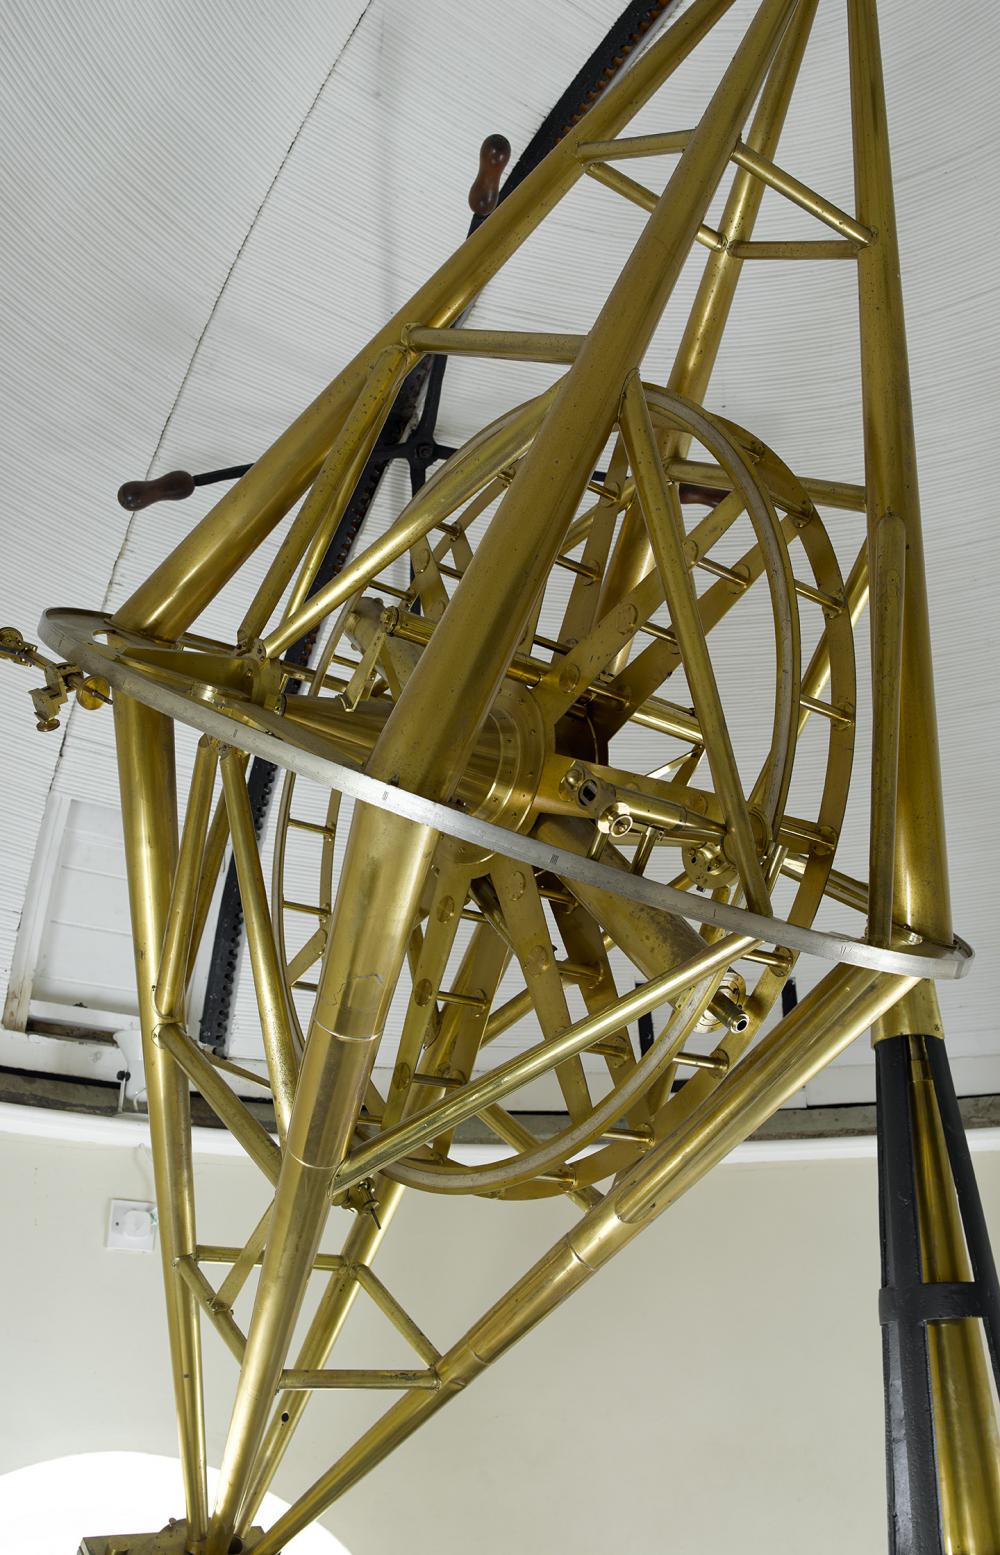 Troughton equatorial telescope (1789, installed in